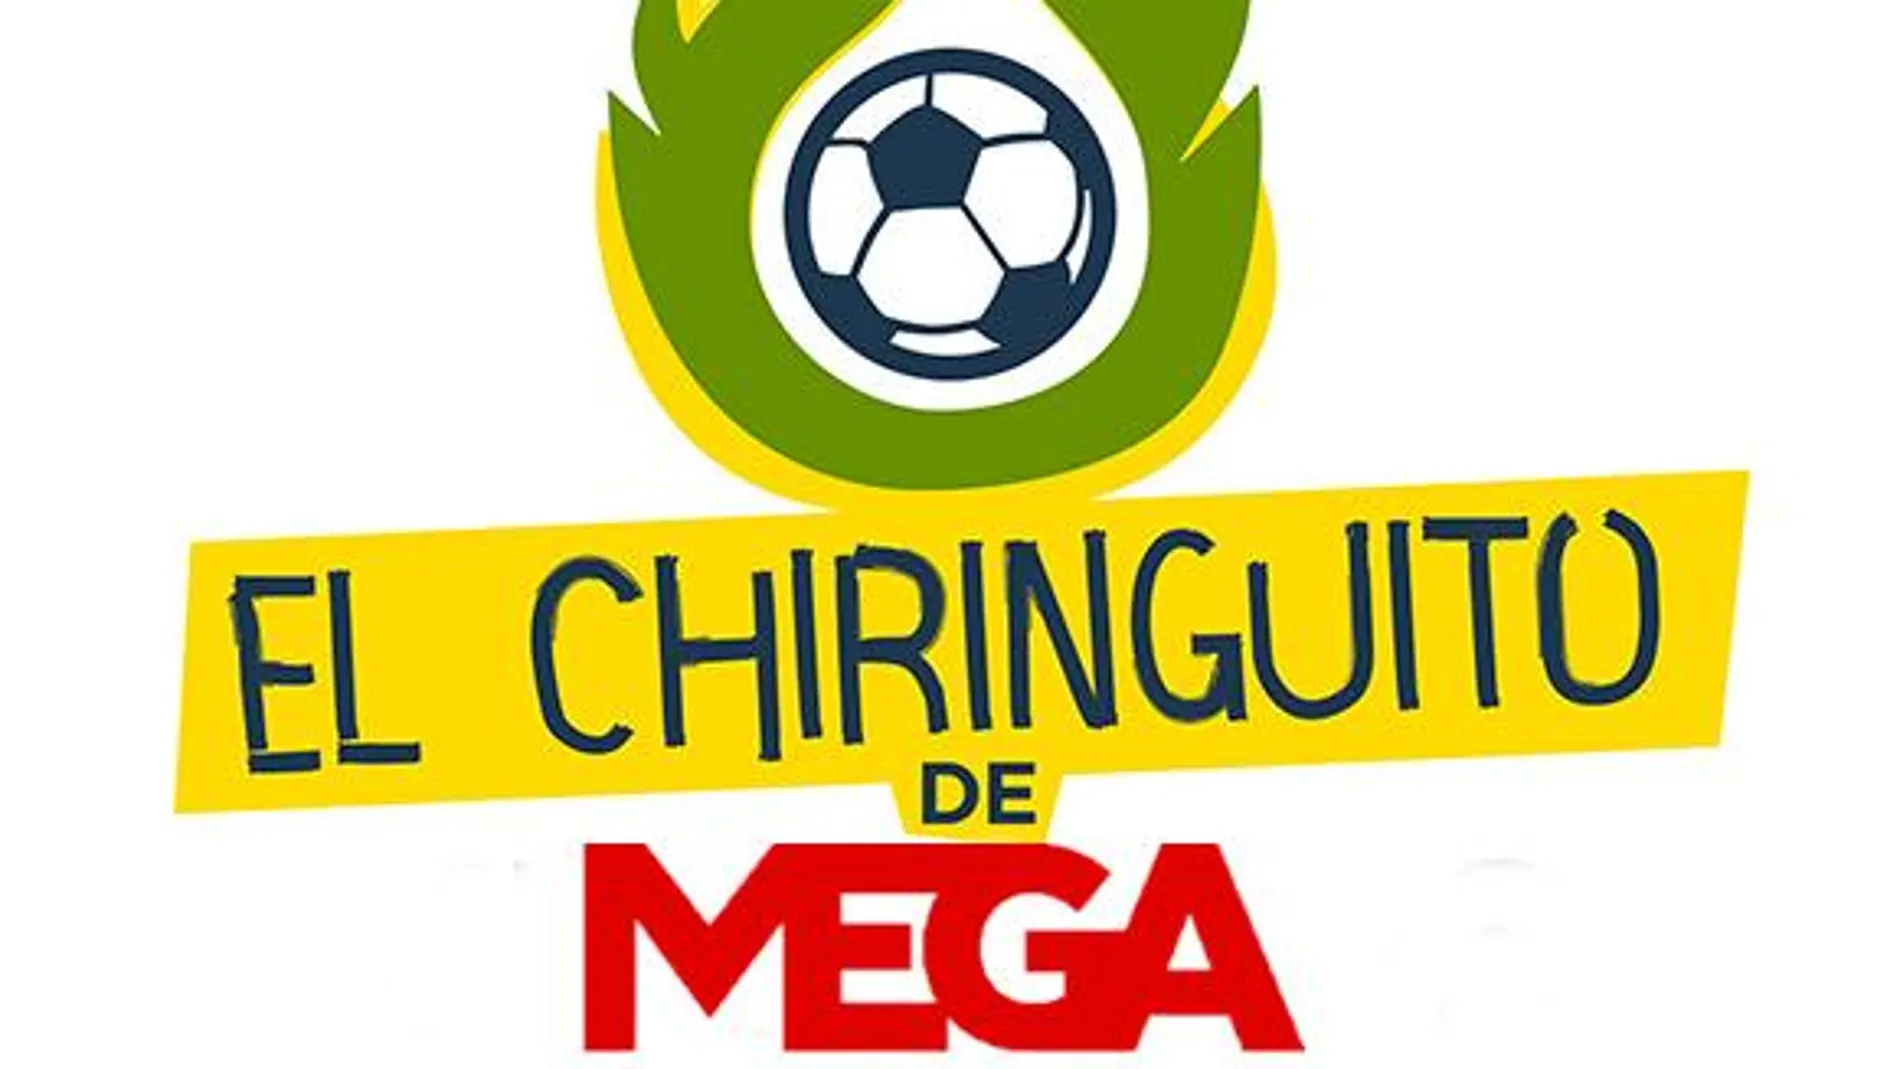 El Chiringuito de Mega Logo